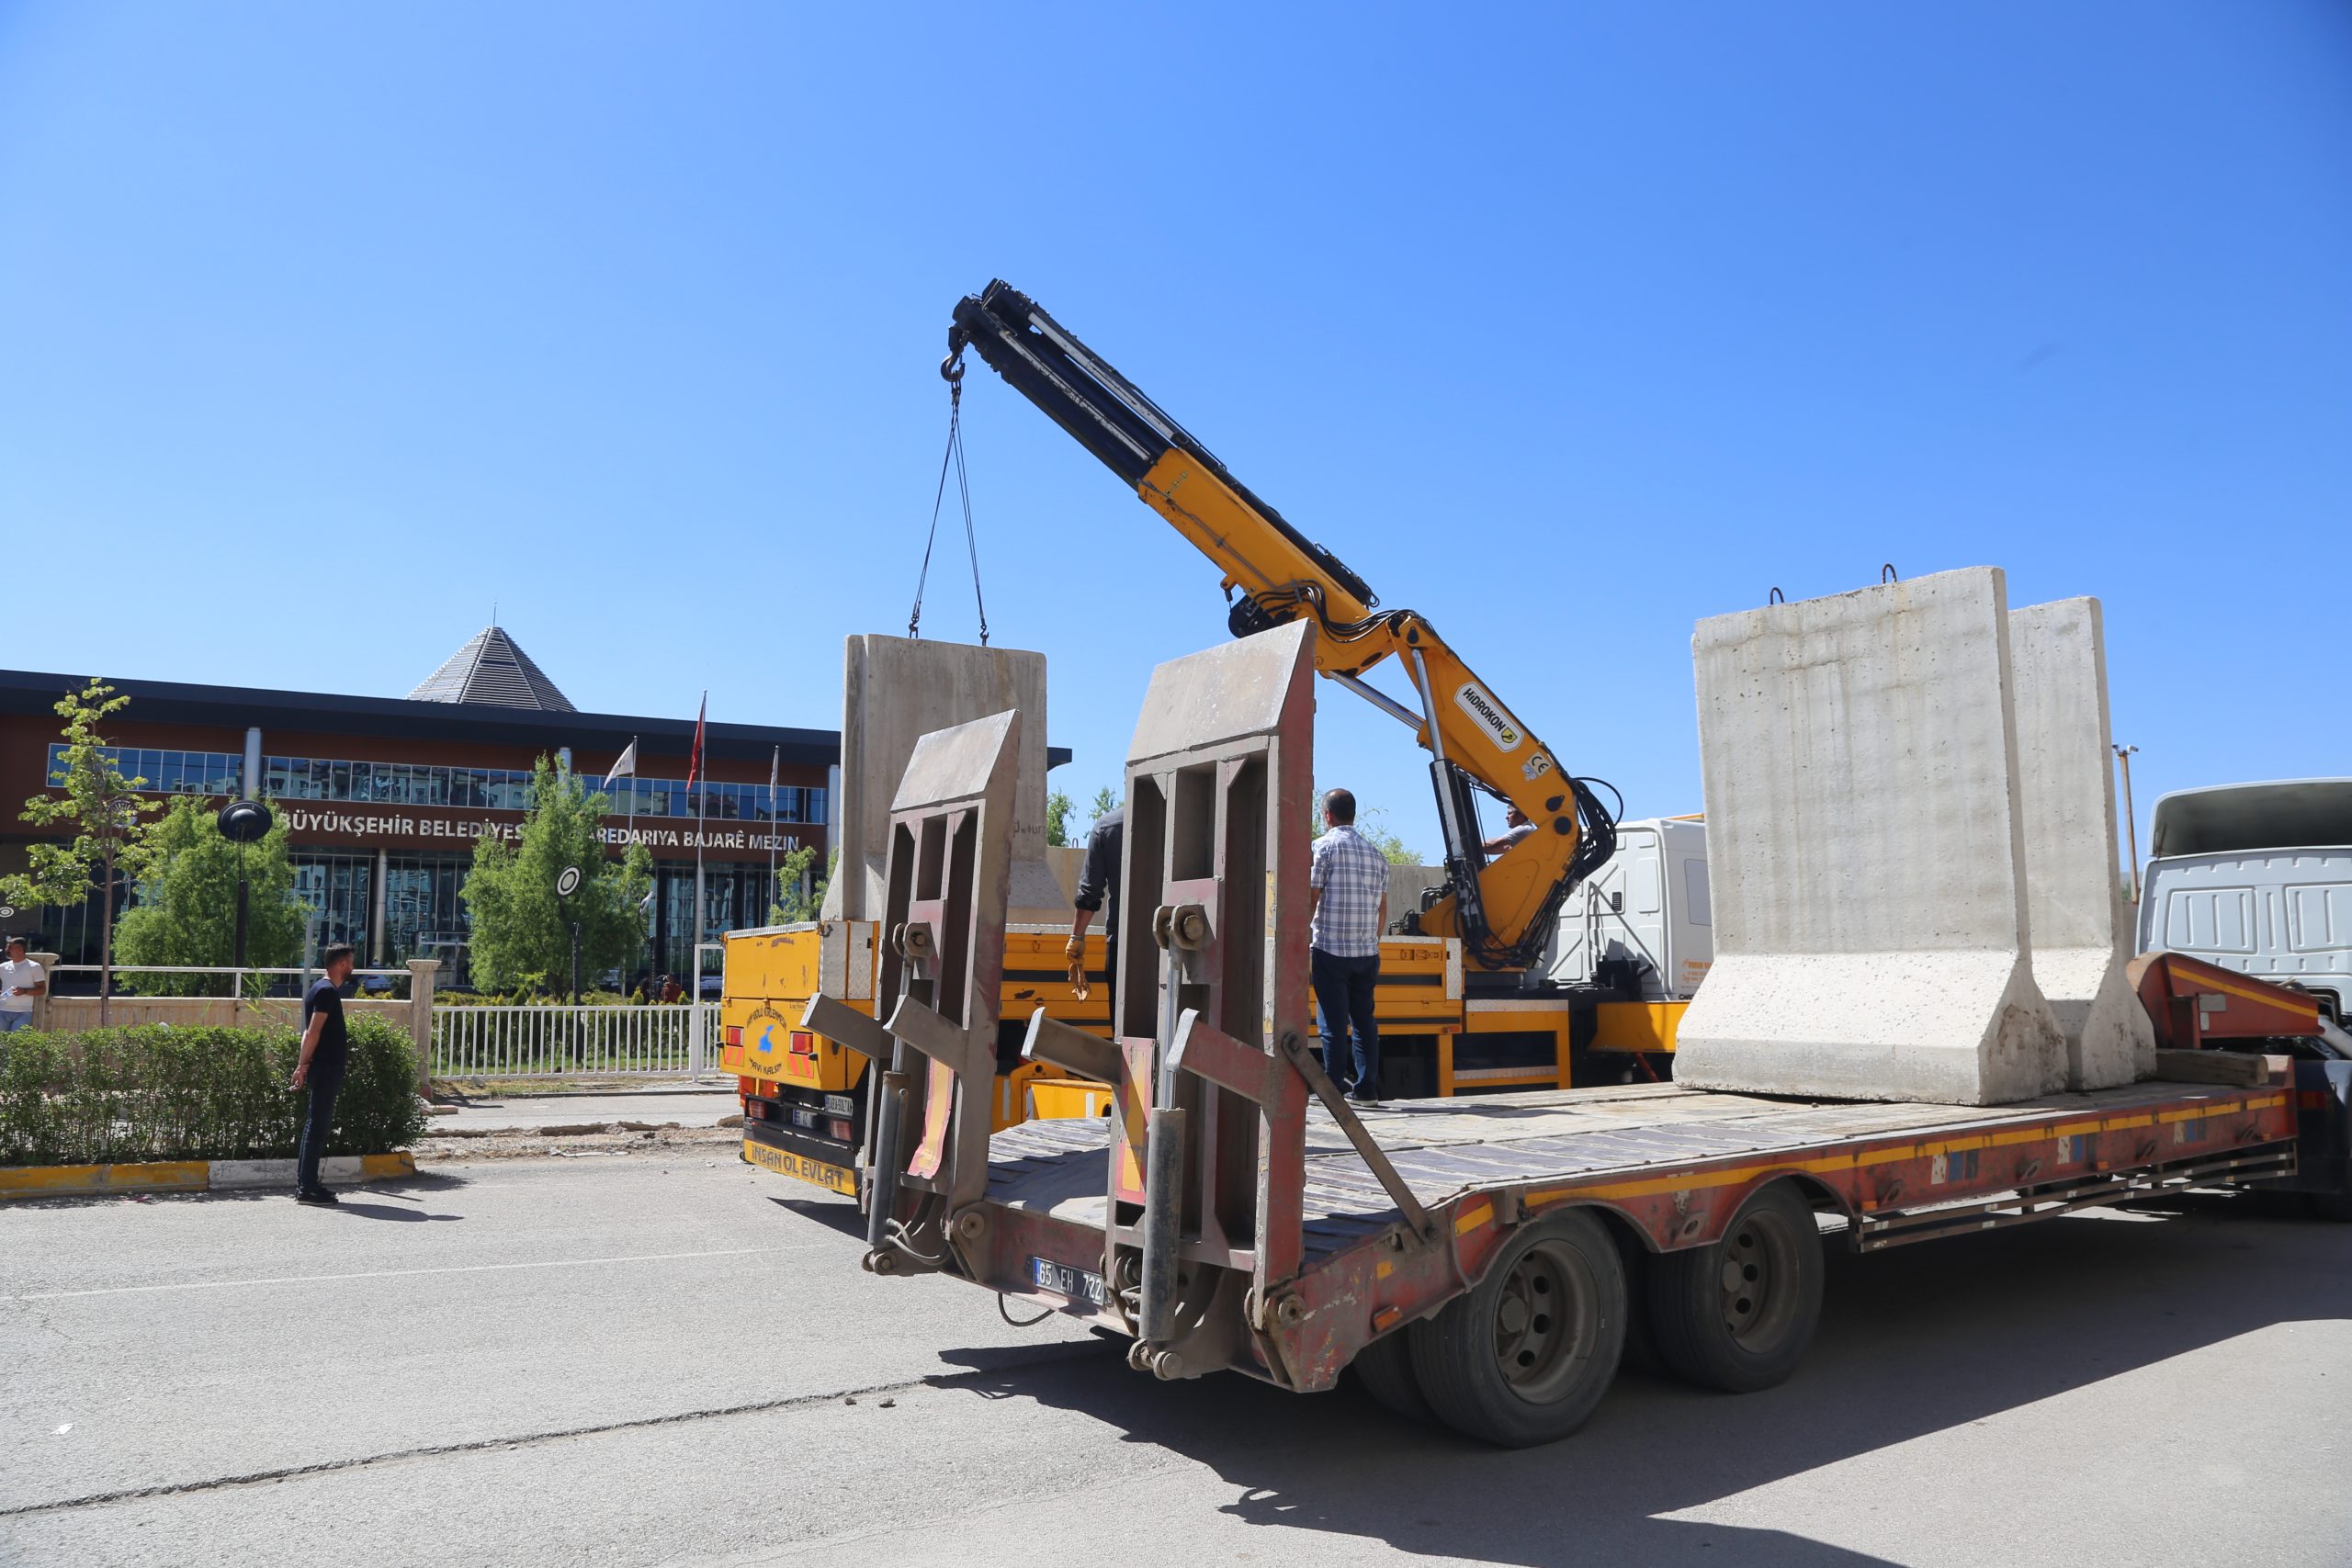 Van Büyükşehir Belediyesinin çevresindeki beton bariyerler kaldırıldı